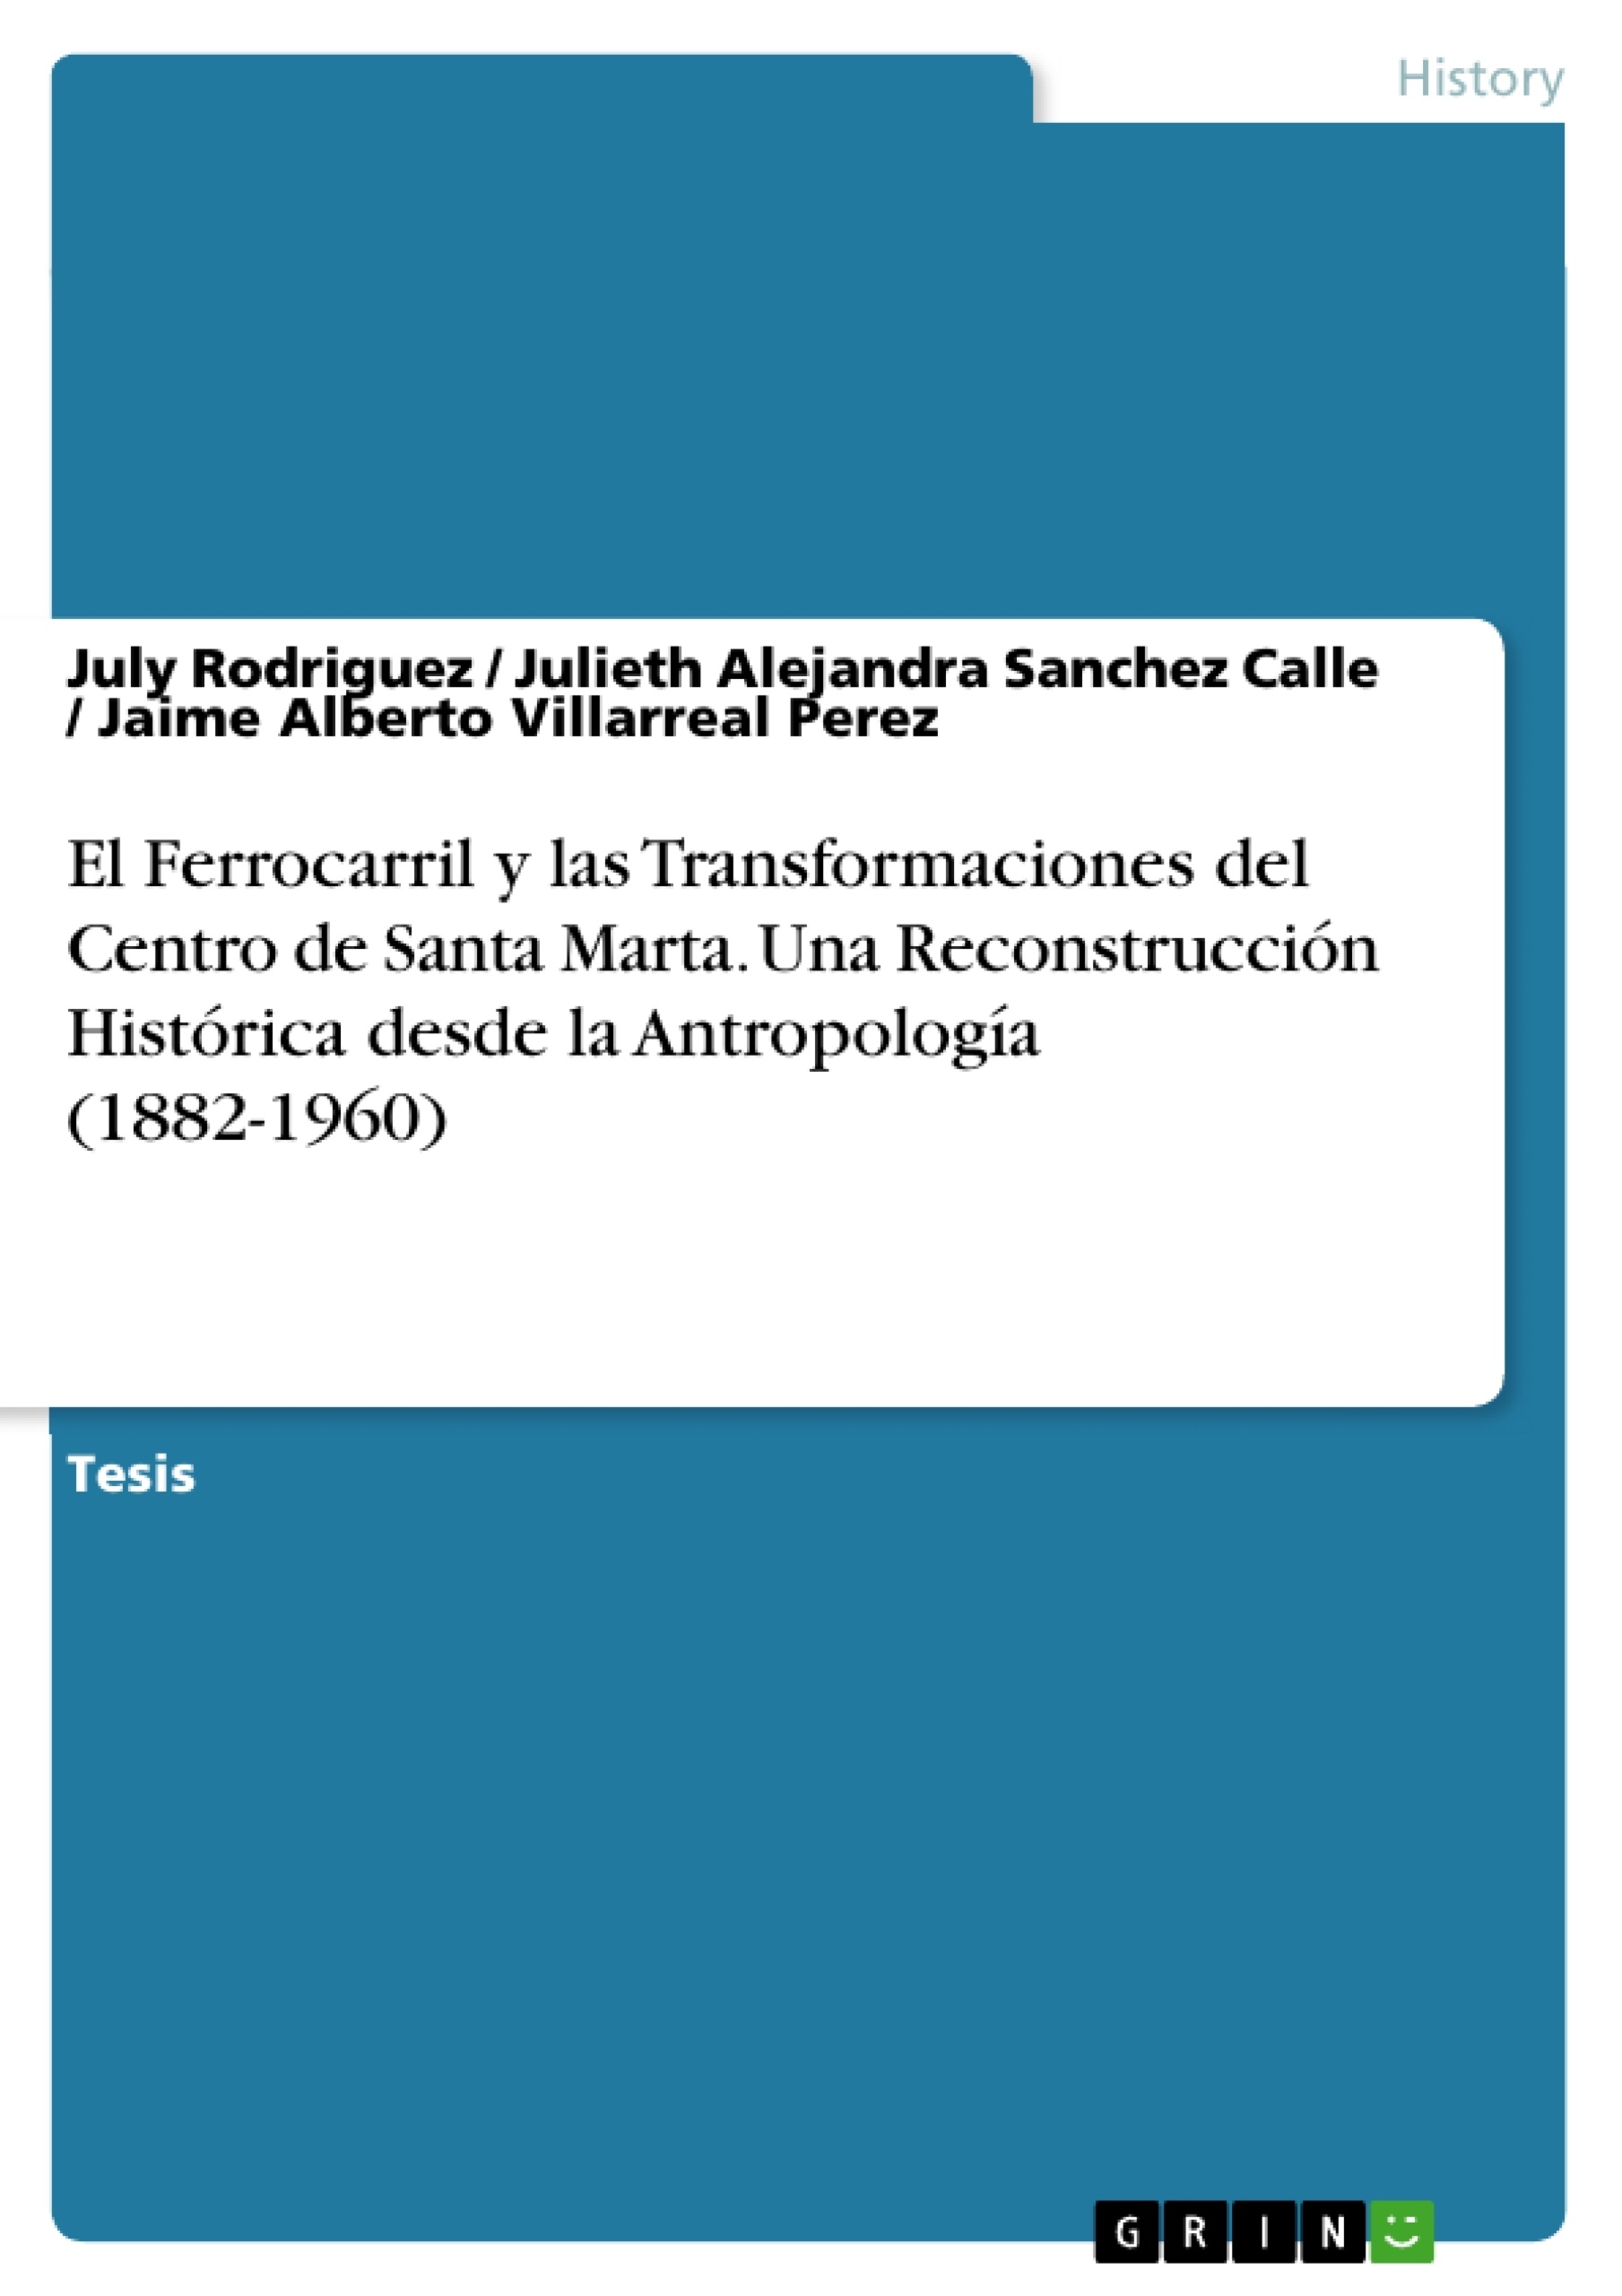 Title: El Ferrocarril y las Transformaciones del Centro de Santa Marta. Una Reconstrucción Histórica desde la Antropología (1882-1960)